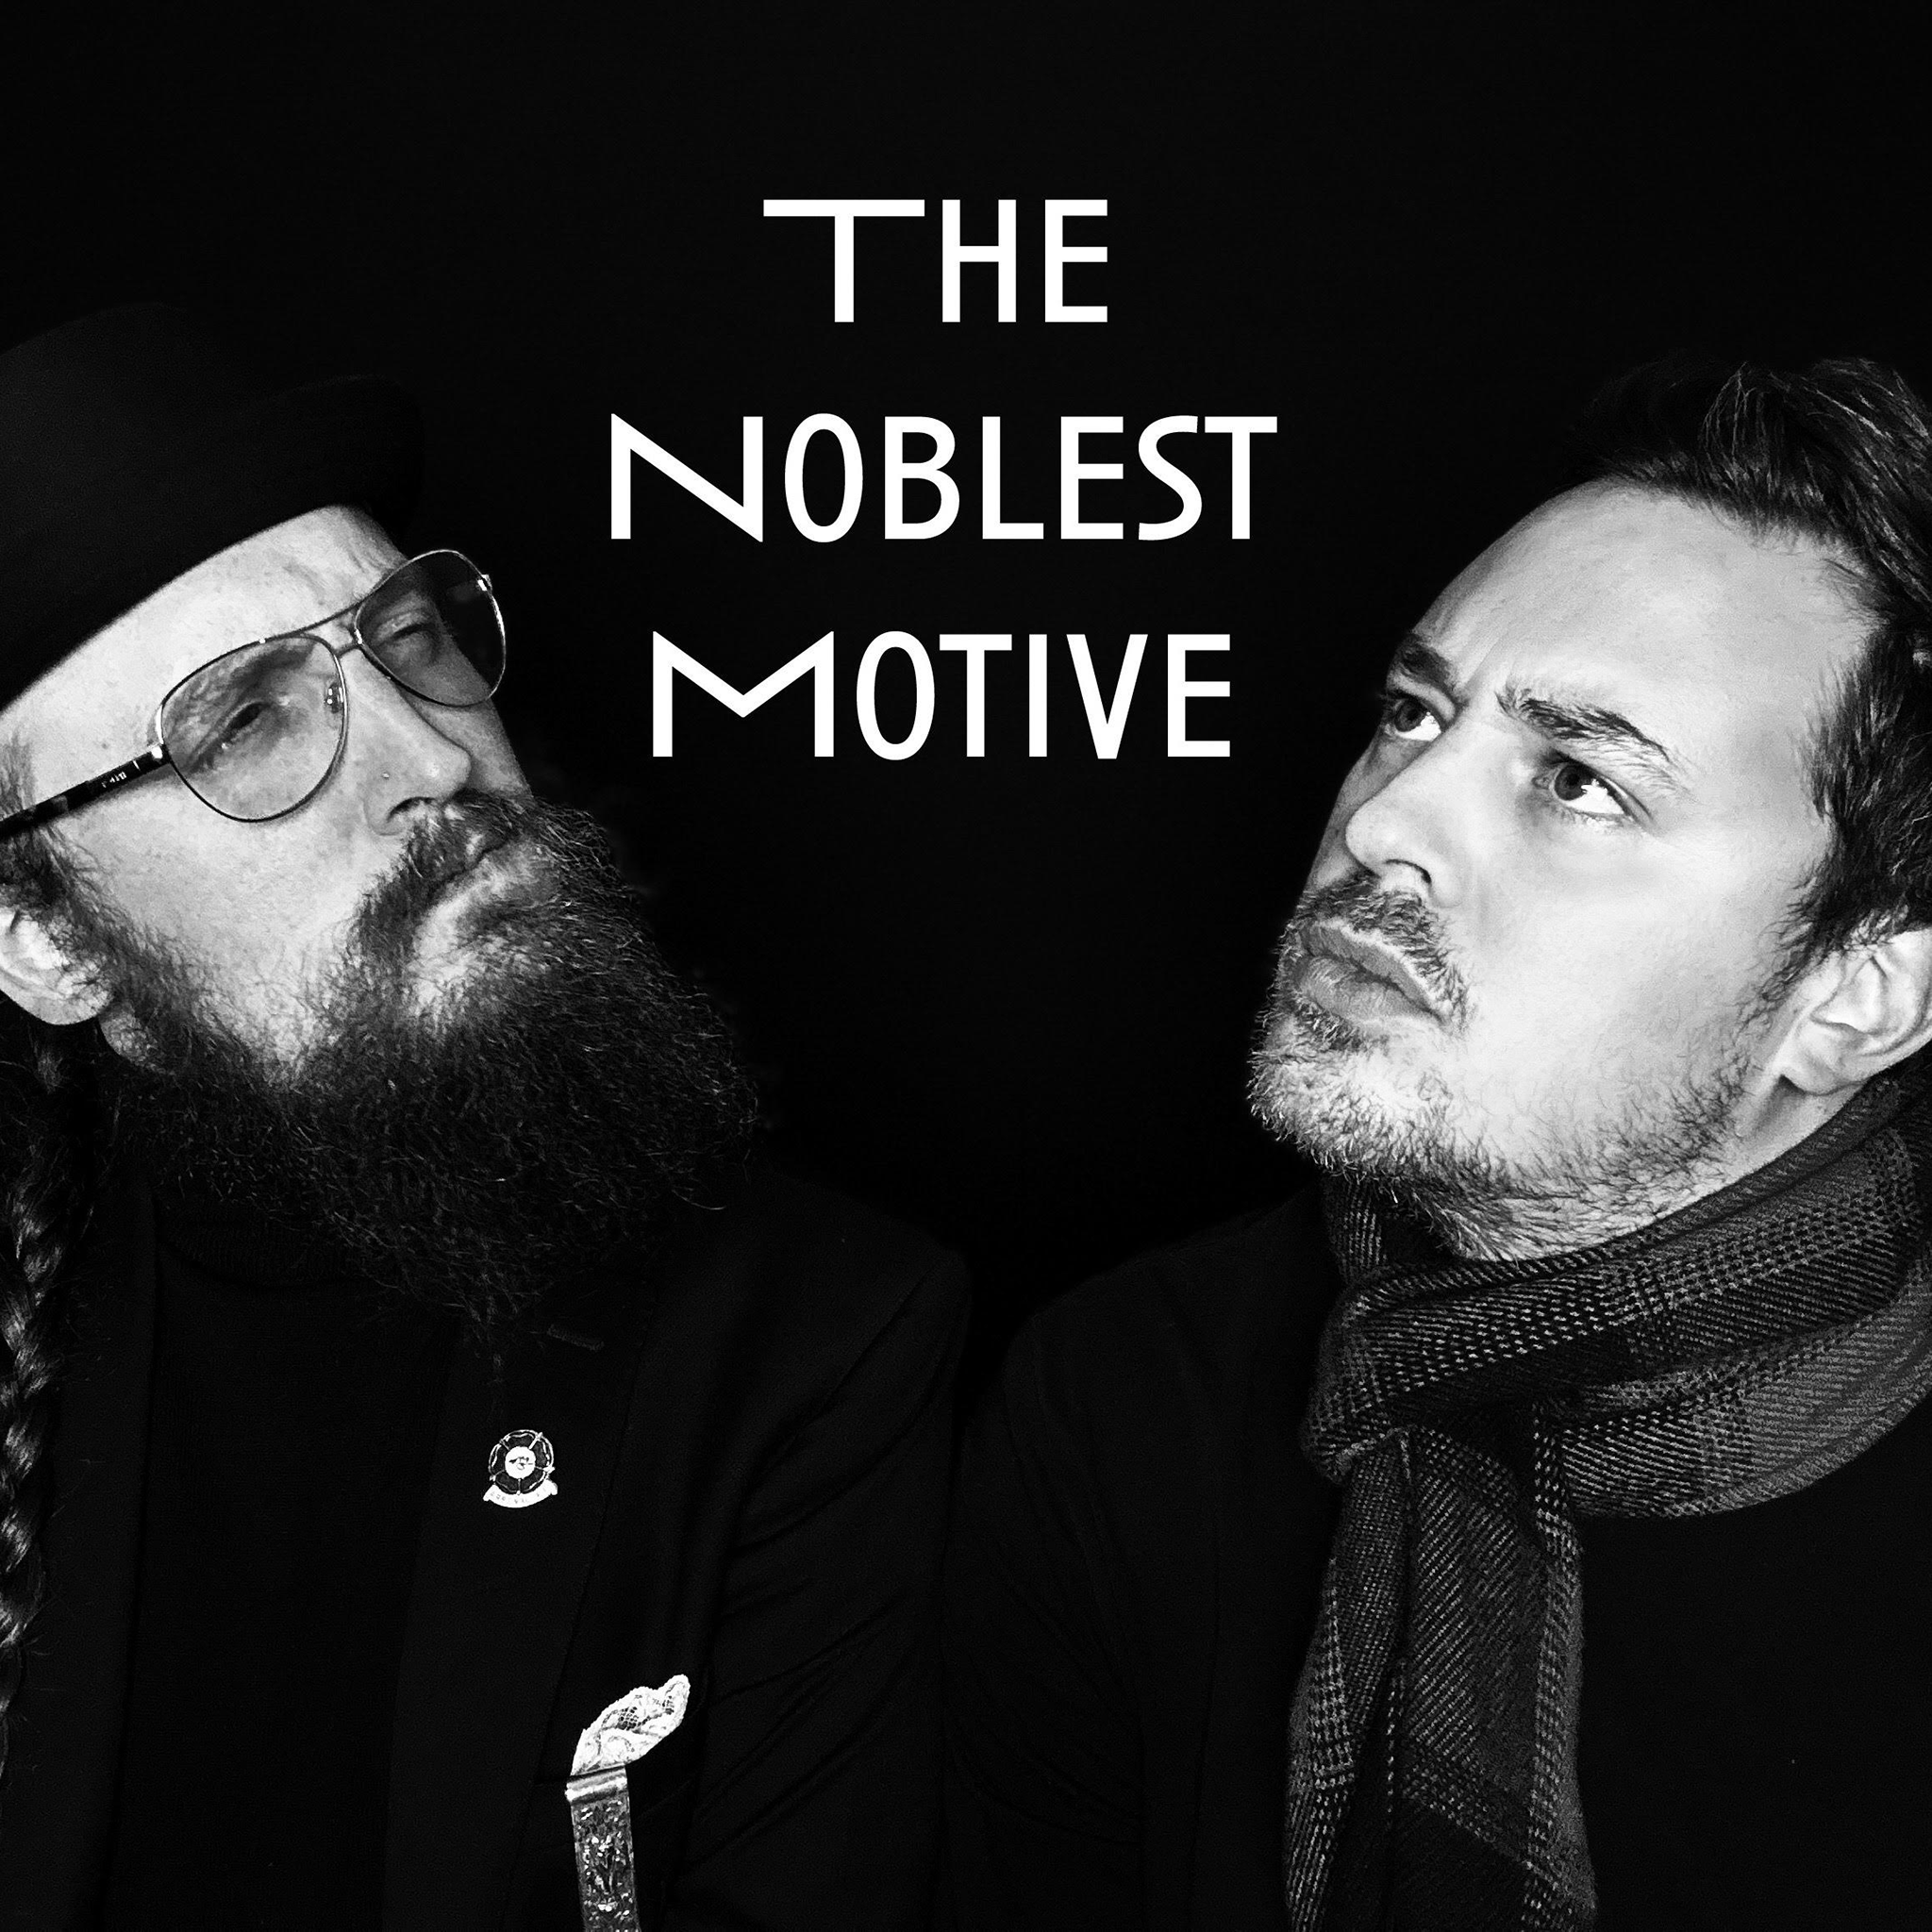 The Noblest Motive: Social Media Episode 2 with Dr. Tom Allen